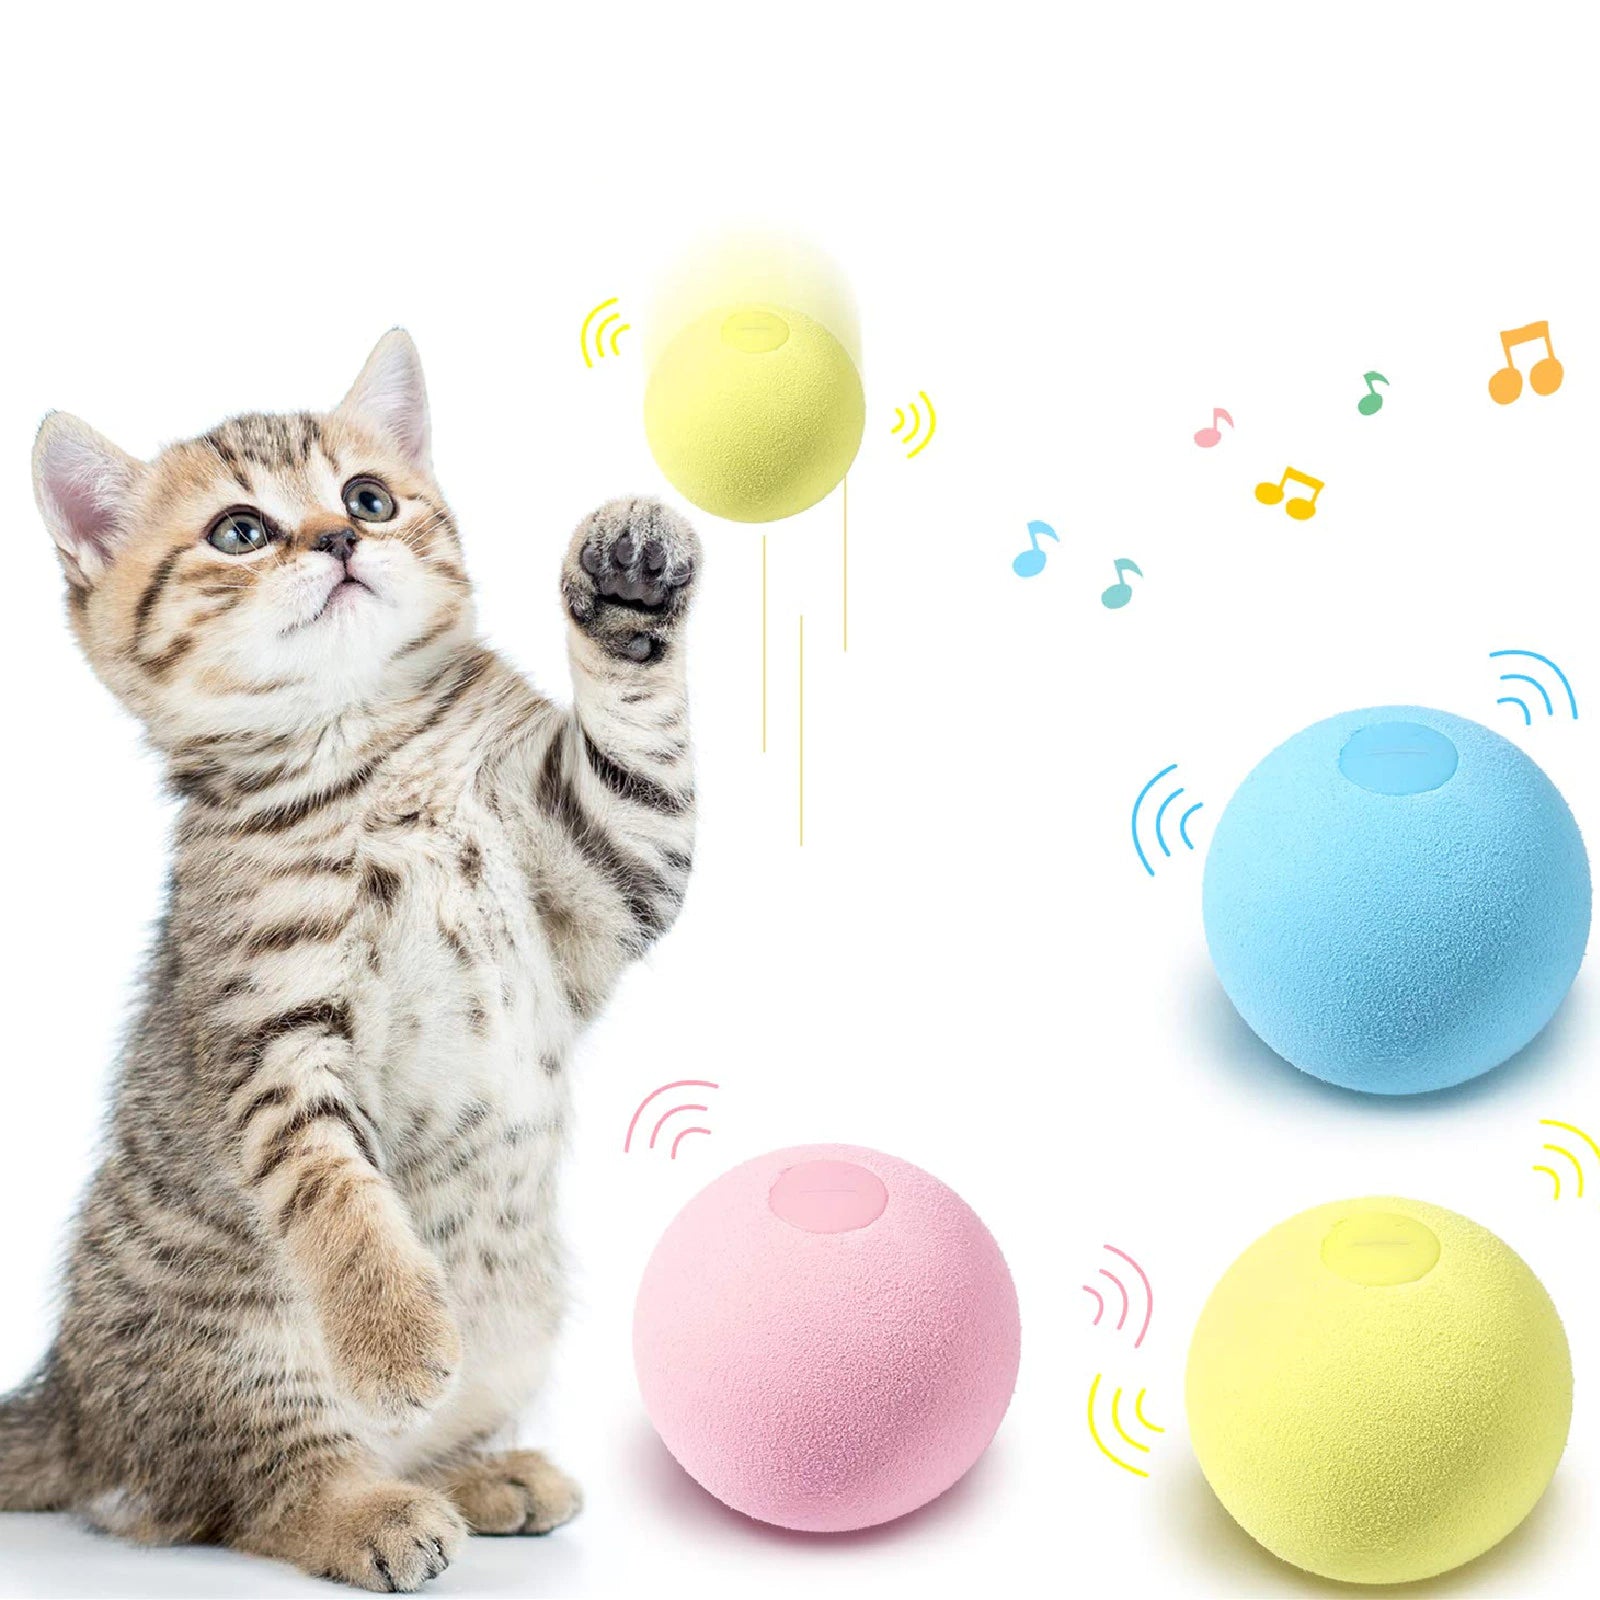 Smart ball toy® - El juguete favorito para tu gato.